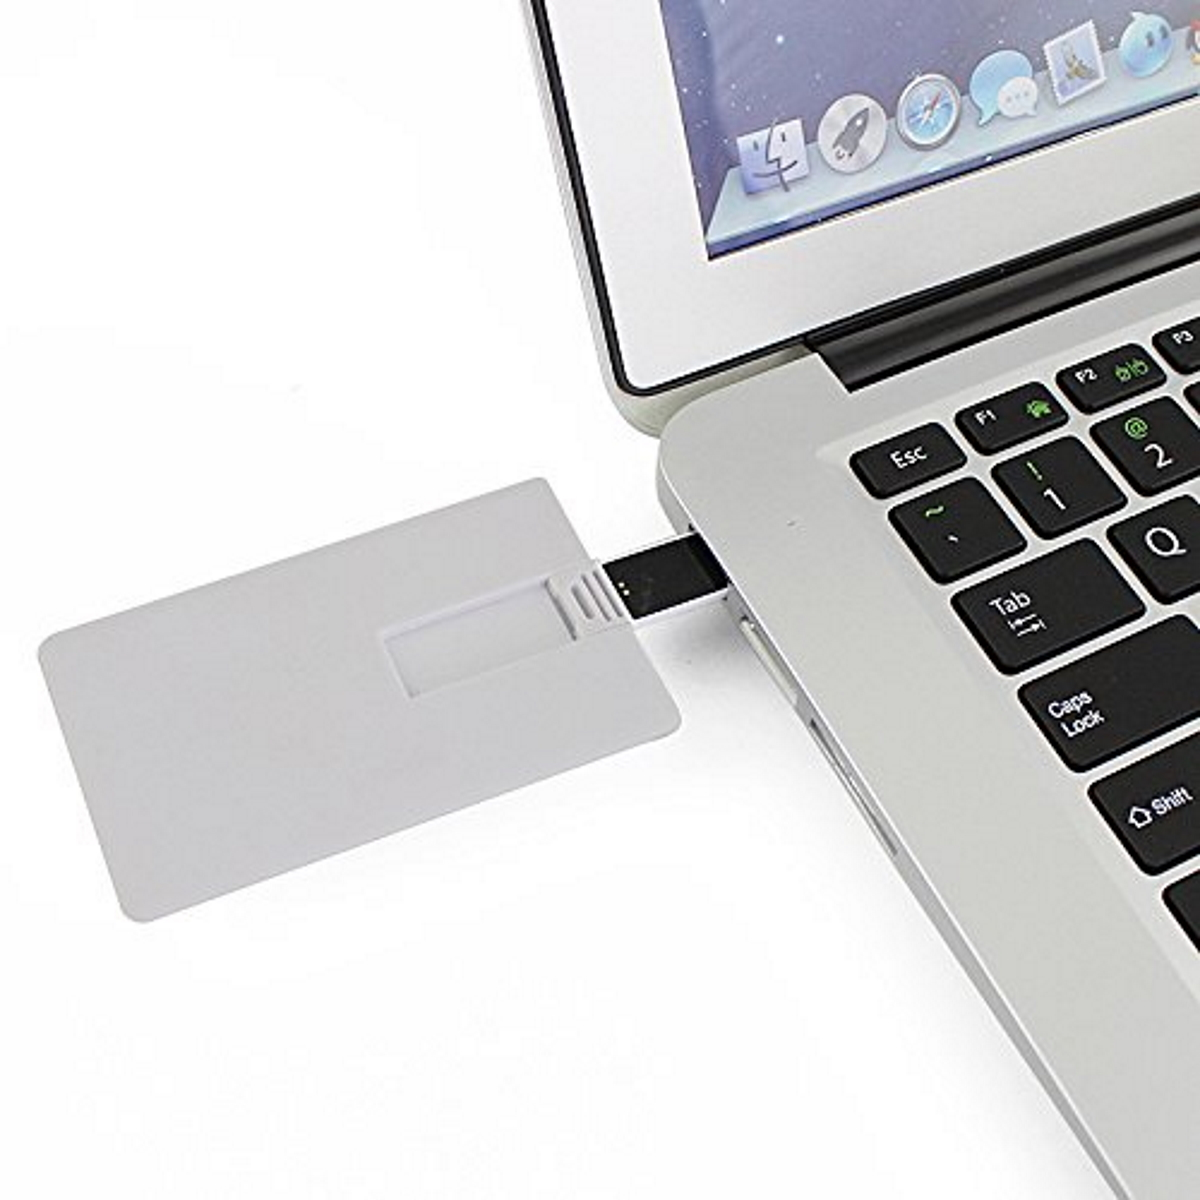 USB GERMANY ® (Weiss, USB-Stick GB) Kreditkarte 4